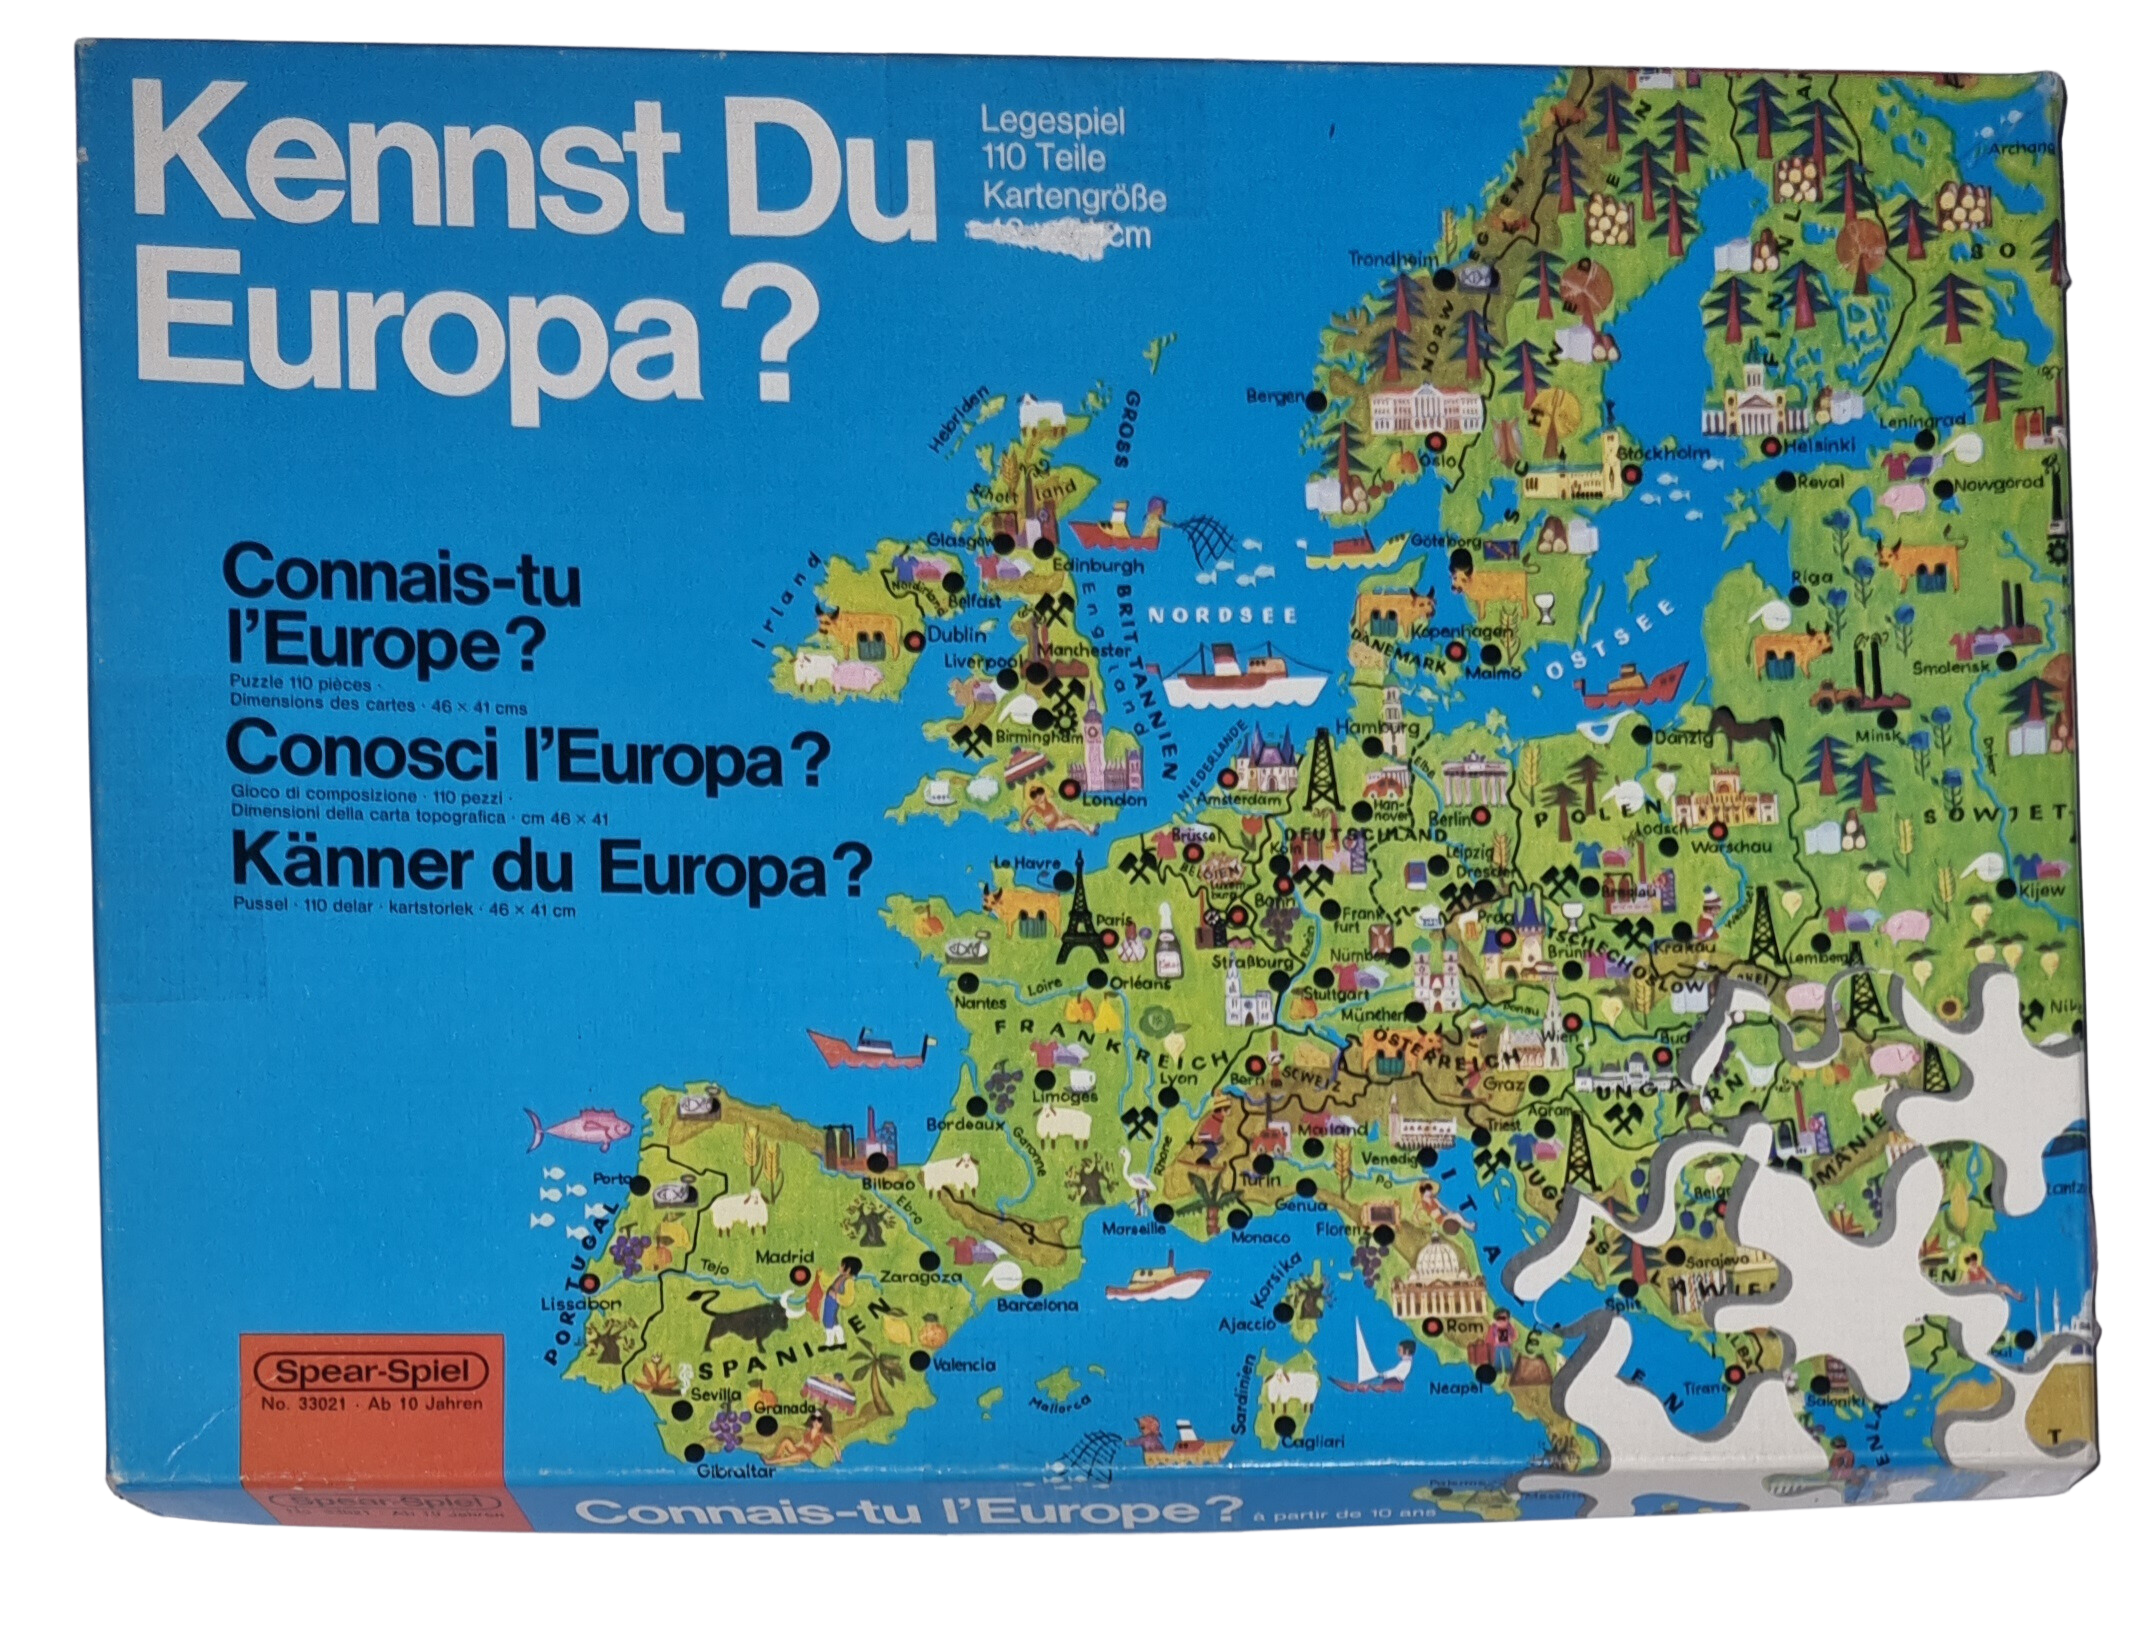 Spear-Spiel Puzzle Kennst du Europa 110 Teile